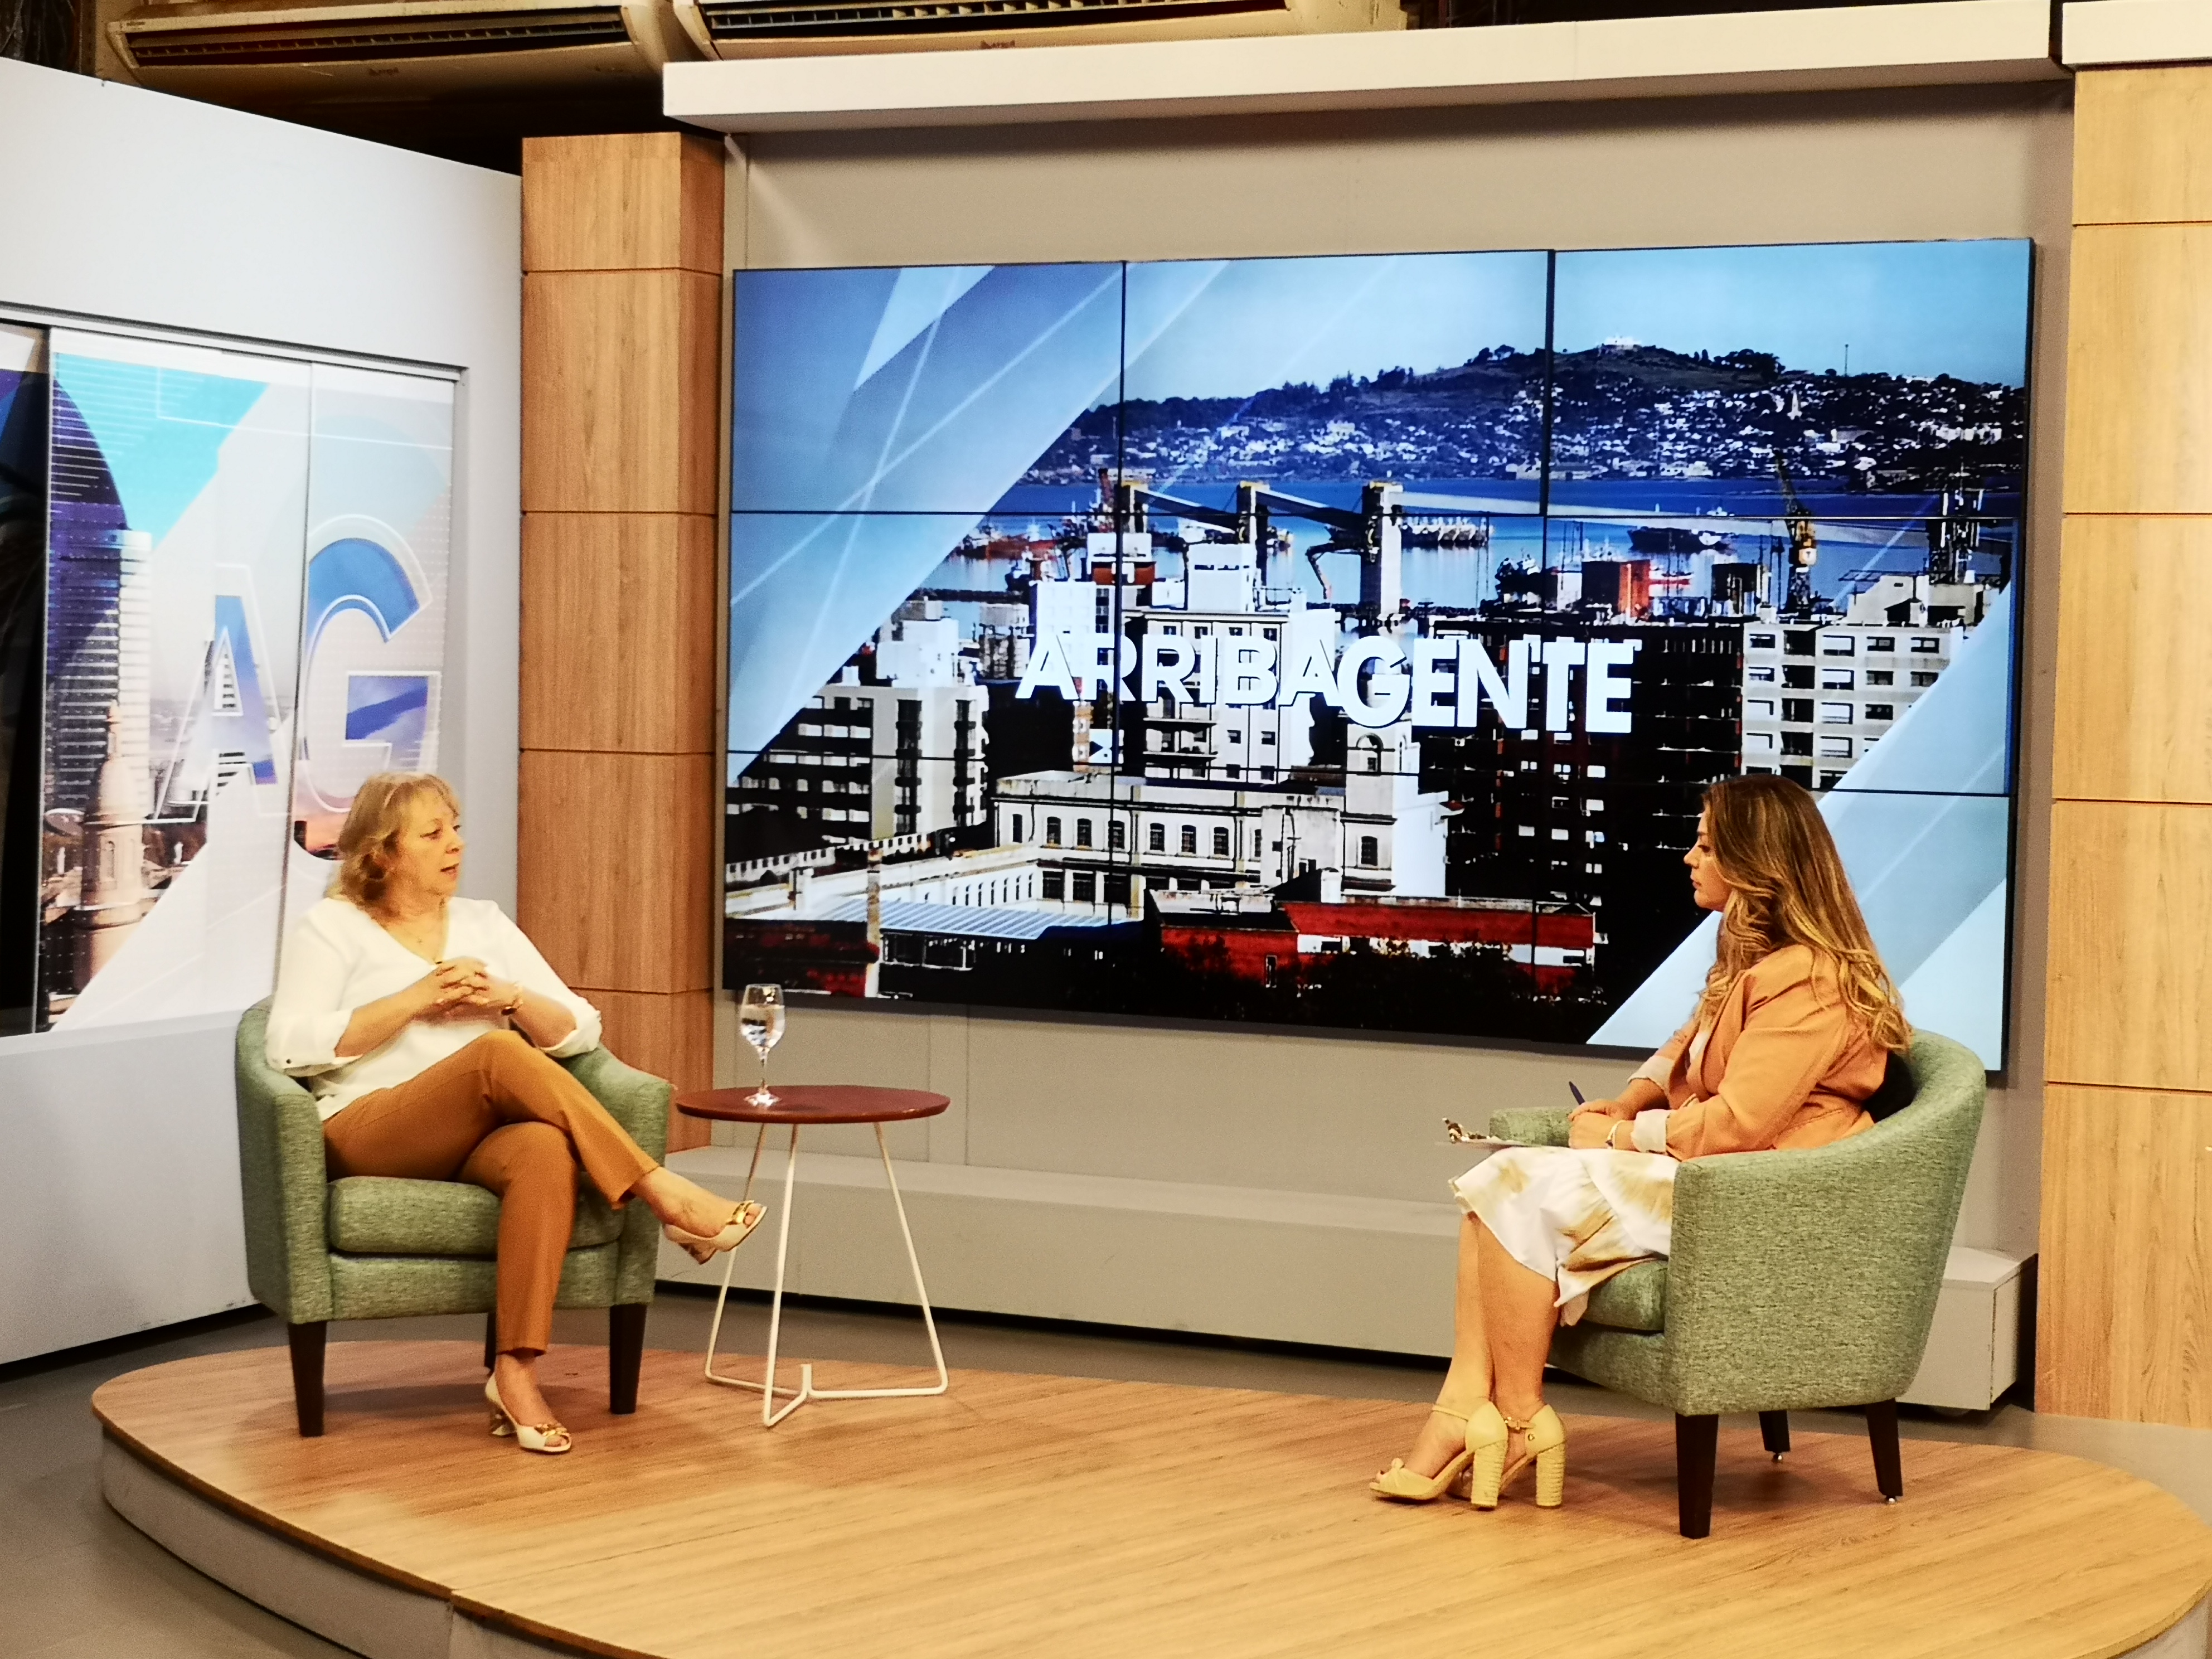 Silvia Emaldi en entrevista en el programa “Arriba Gente”, de Canal 10